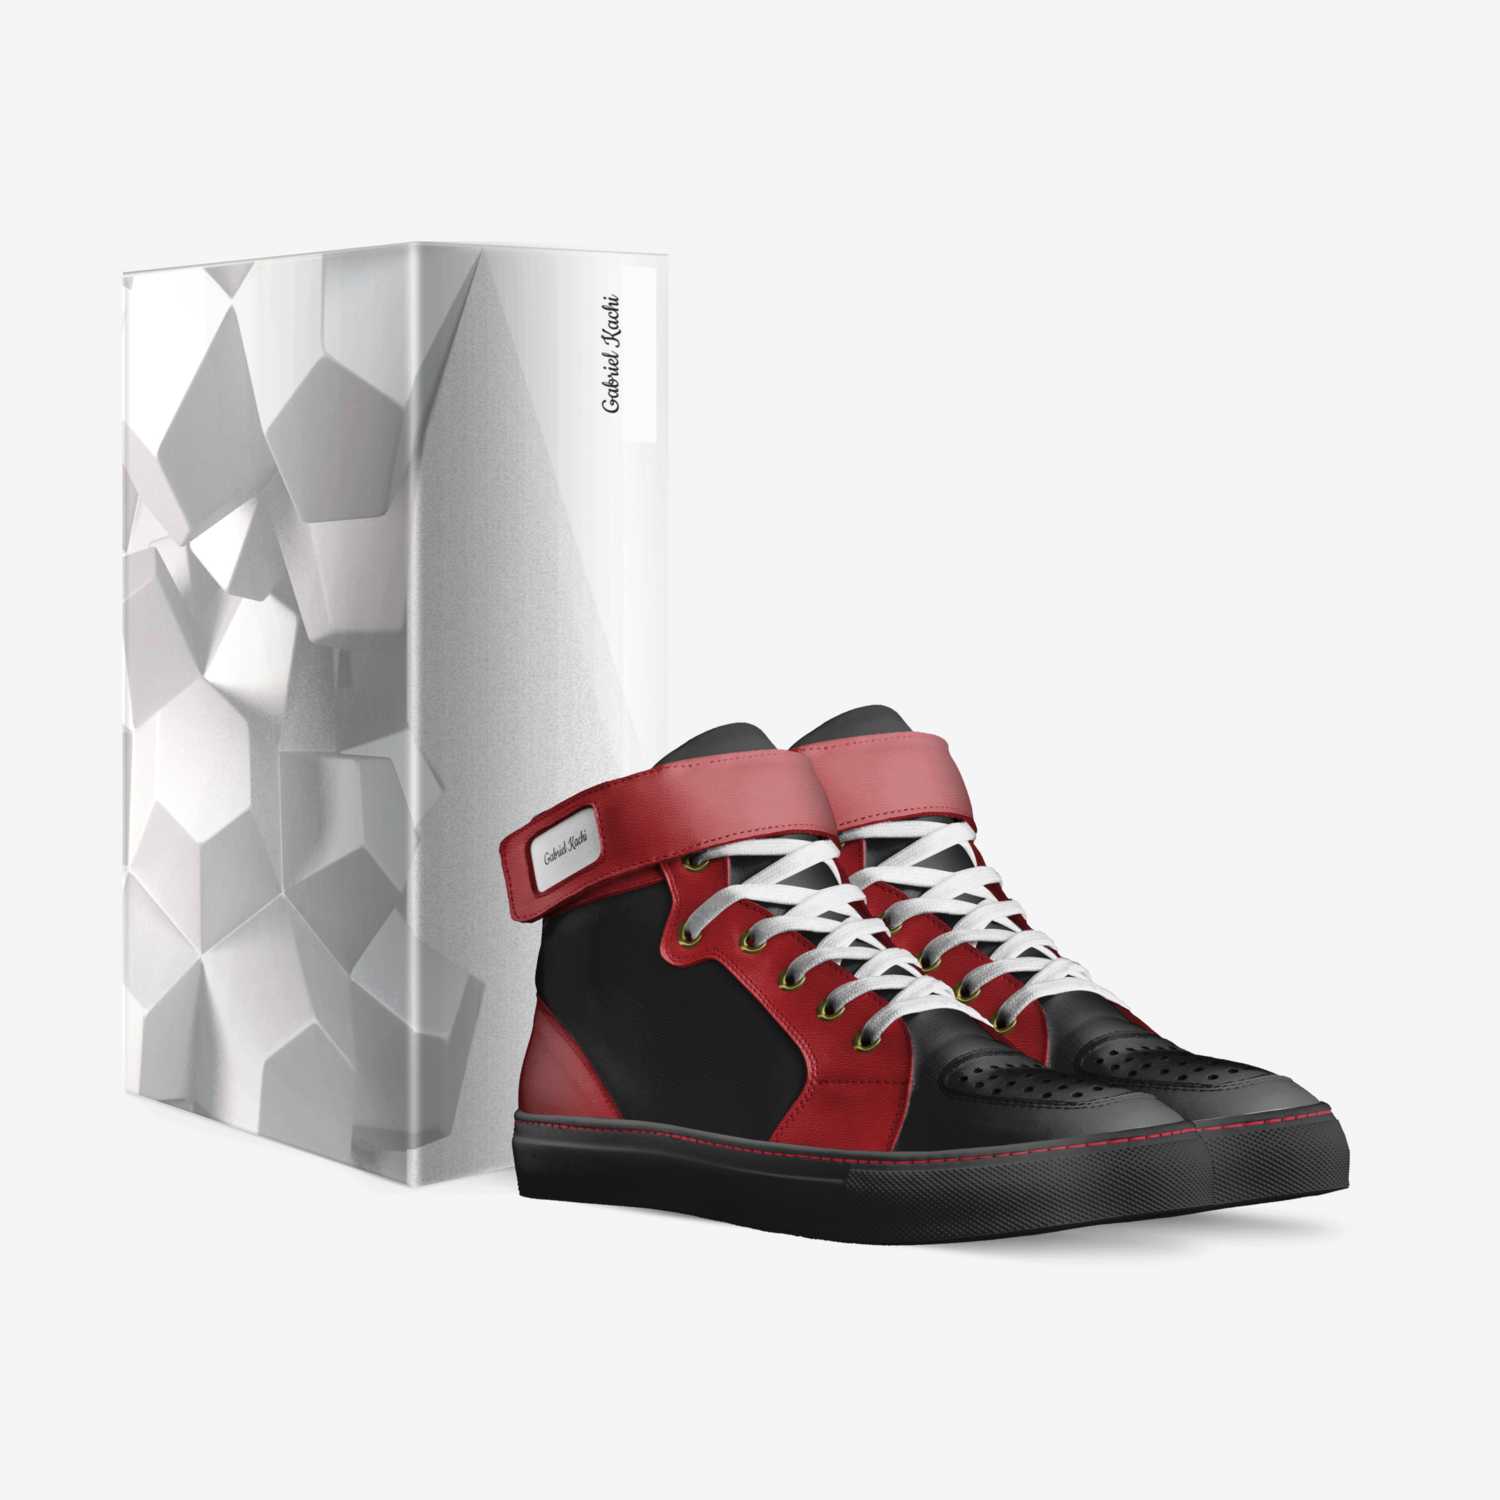 Gabriel Kachi custom made in Italy shoes by Zein Kachi | Box view